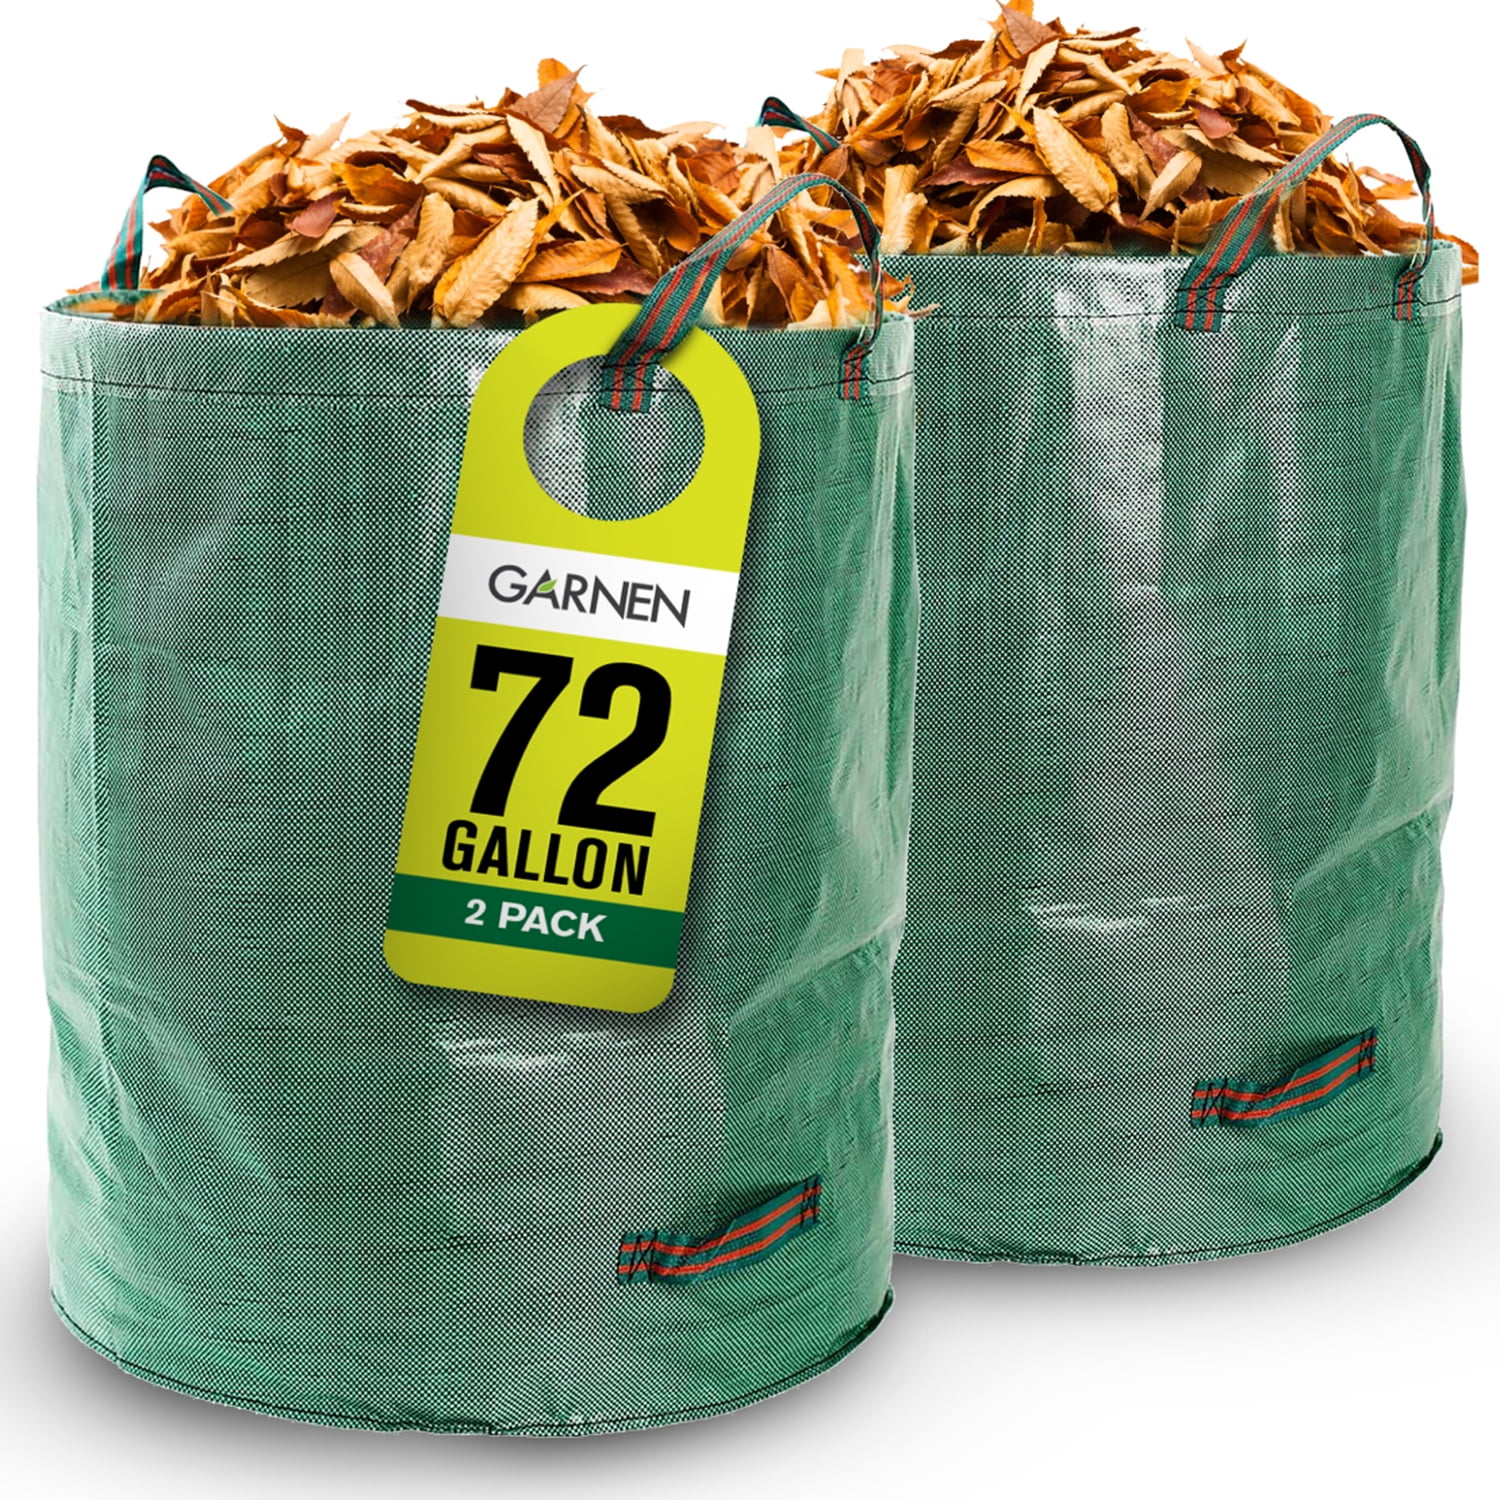 60L Garden Leaf Waste Bag Reusable Yard Pool Debris Storage Holder with Handles 